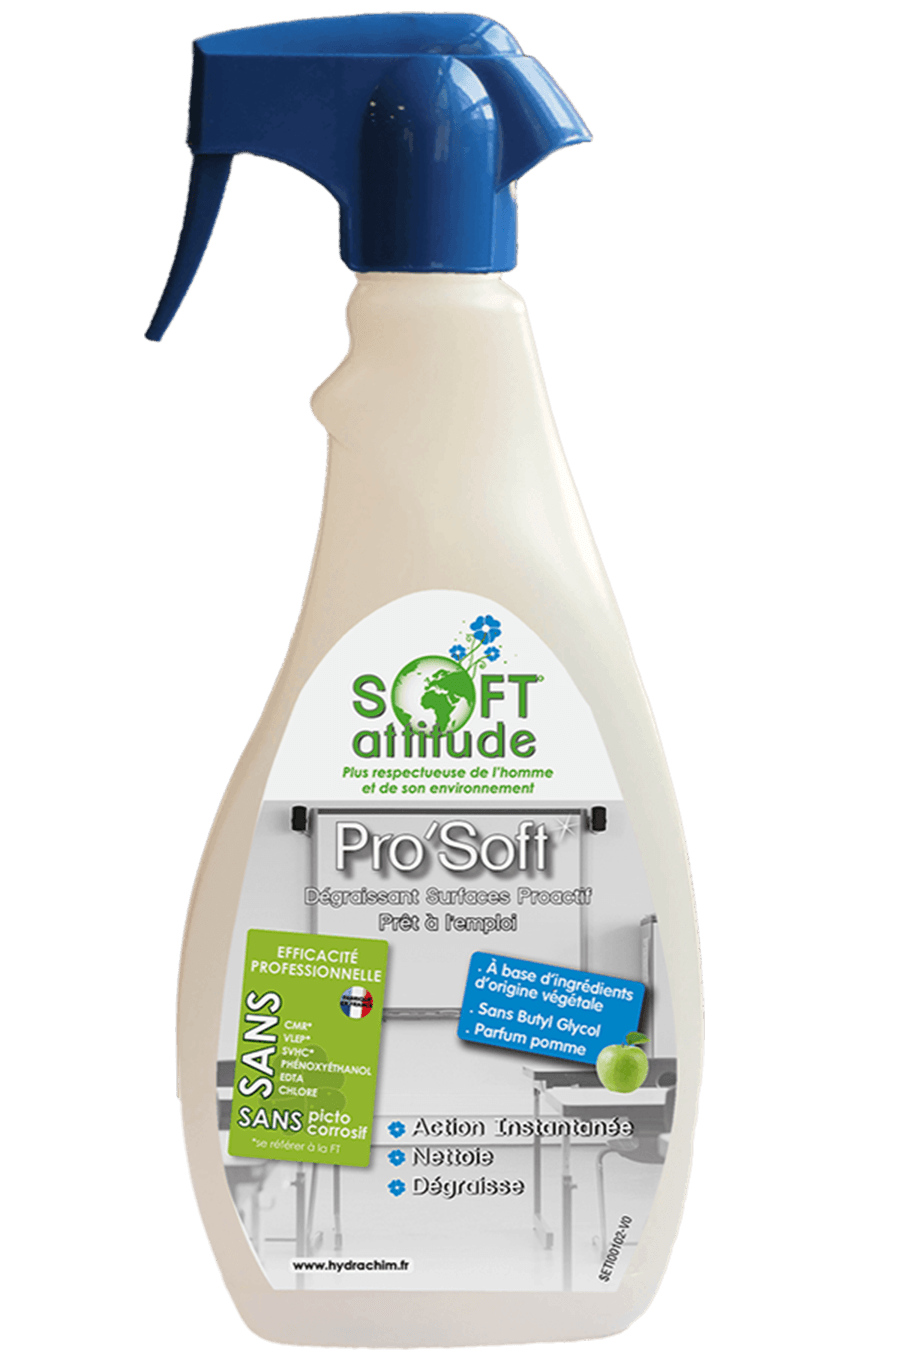 Spray nettoyant, dégraissant et détachant - Pro'Soft